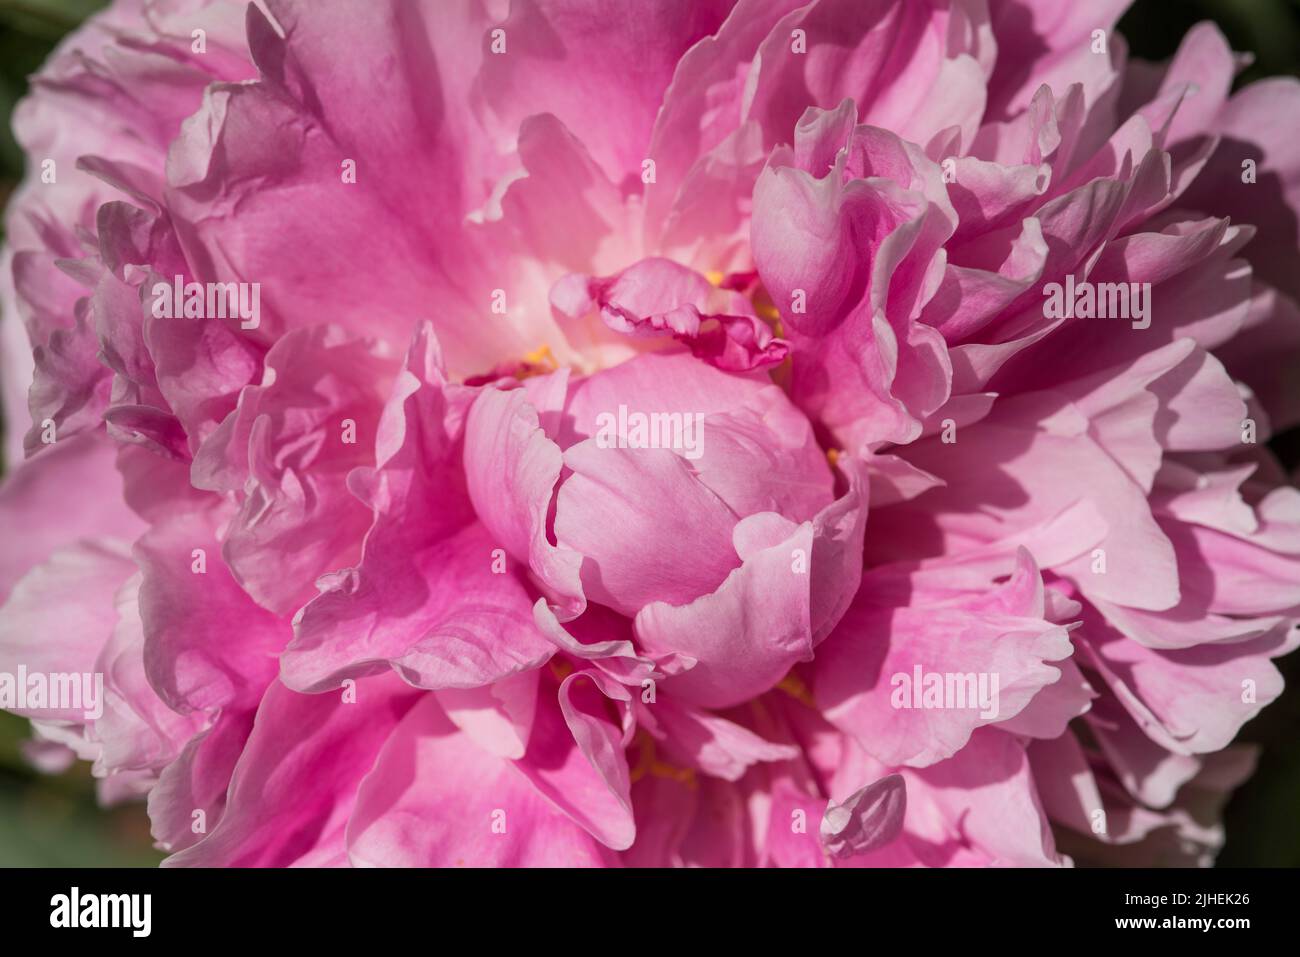 Close up of a vibrant pink Peony with ruffled petals. Peony ‘Sarah Bernhardt’. Stock Photo